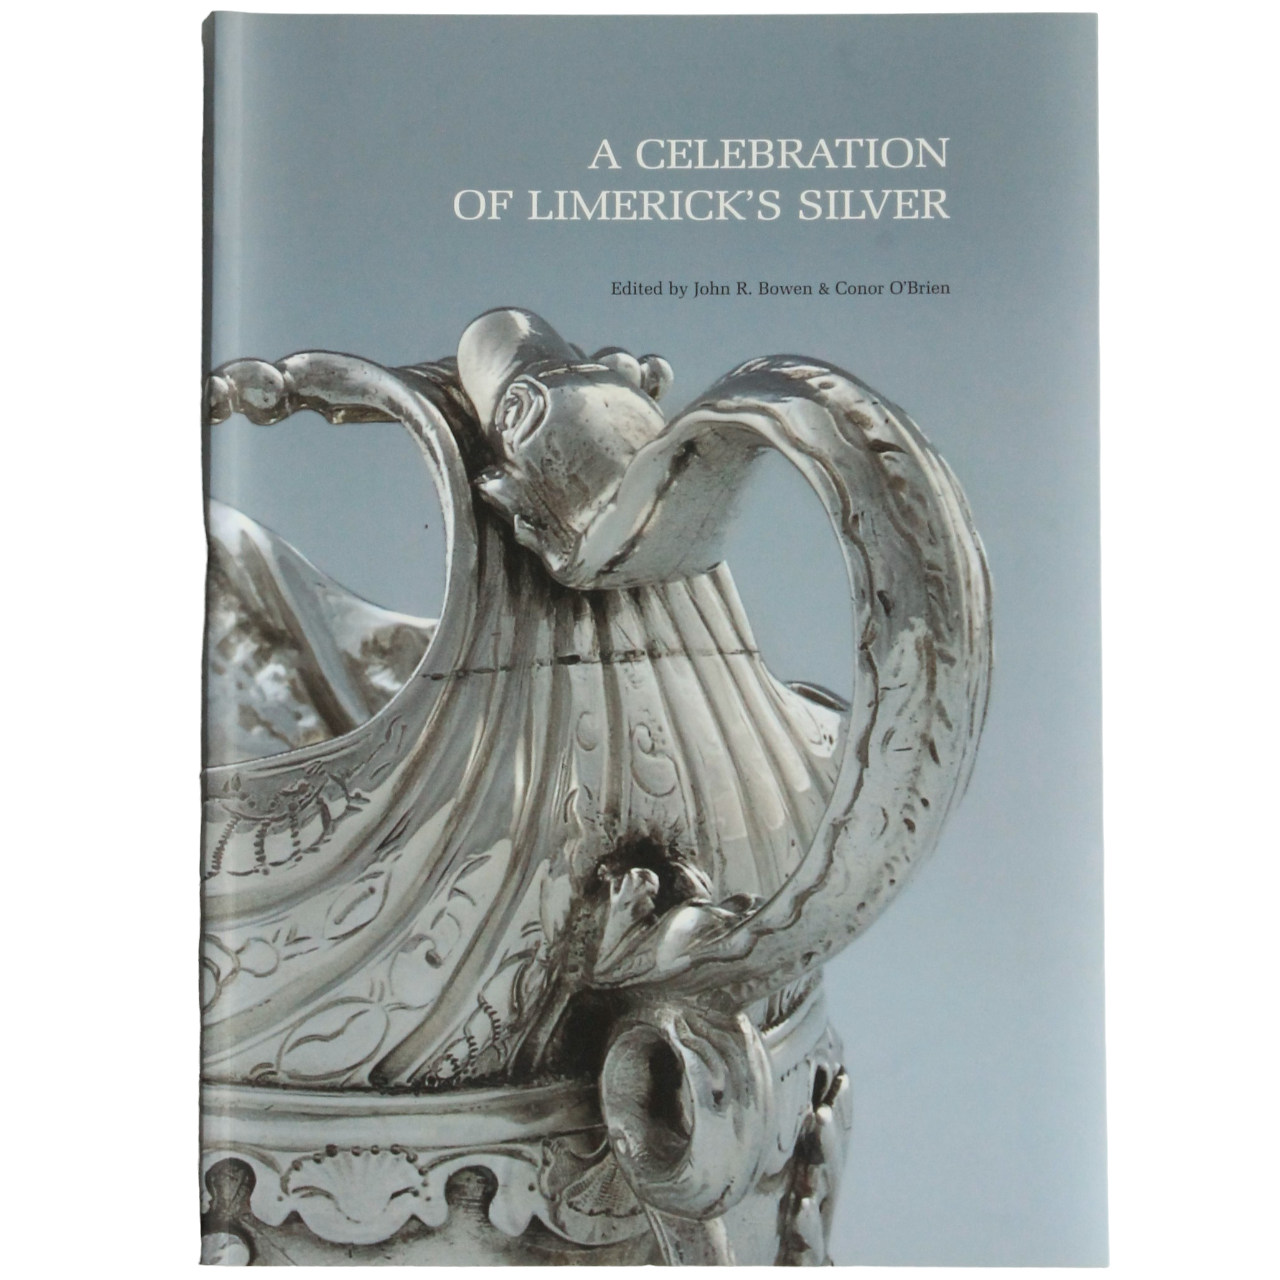 A Celebration of Limerick's Silver